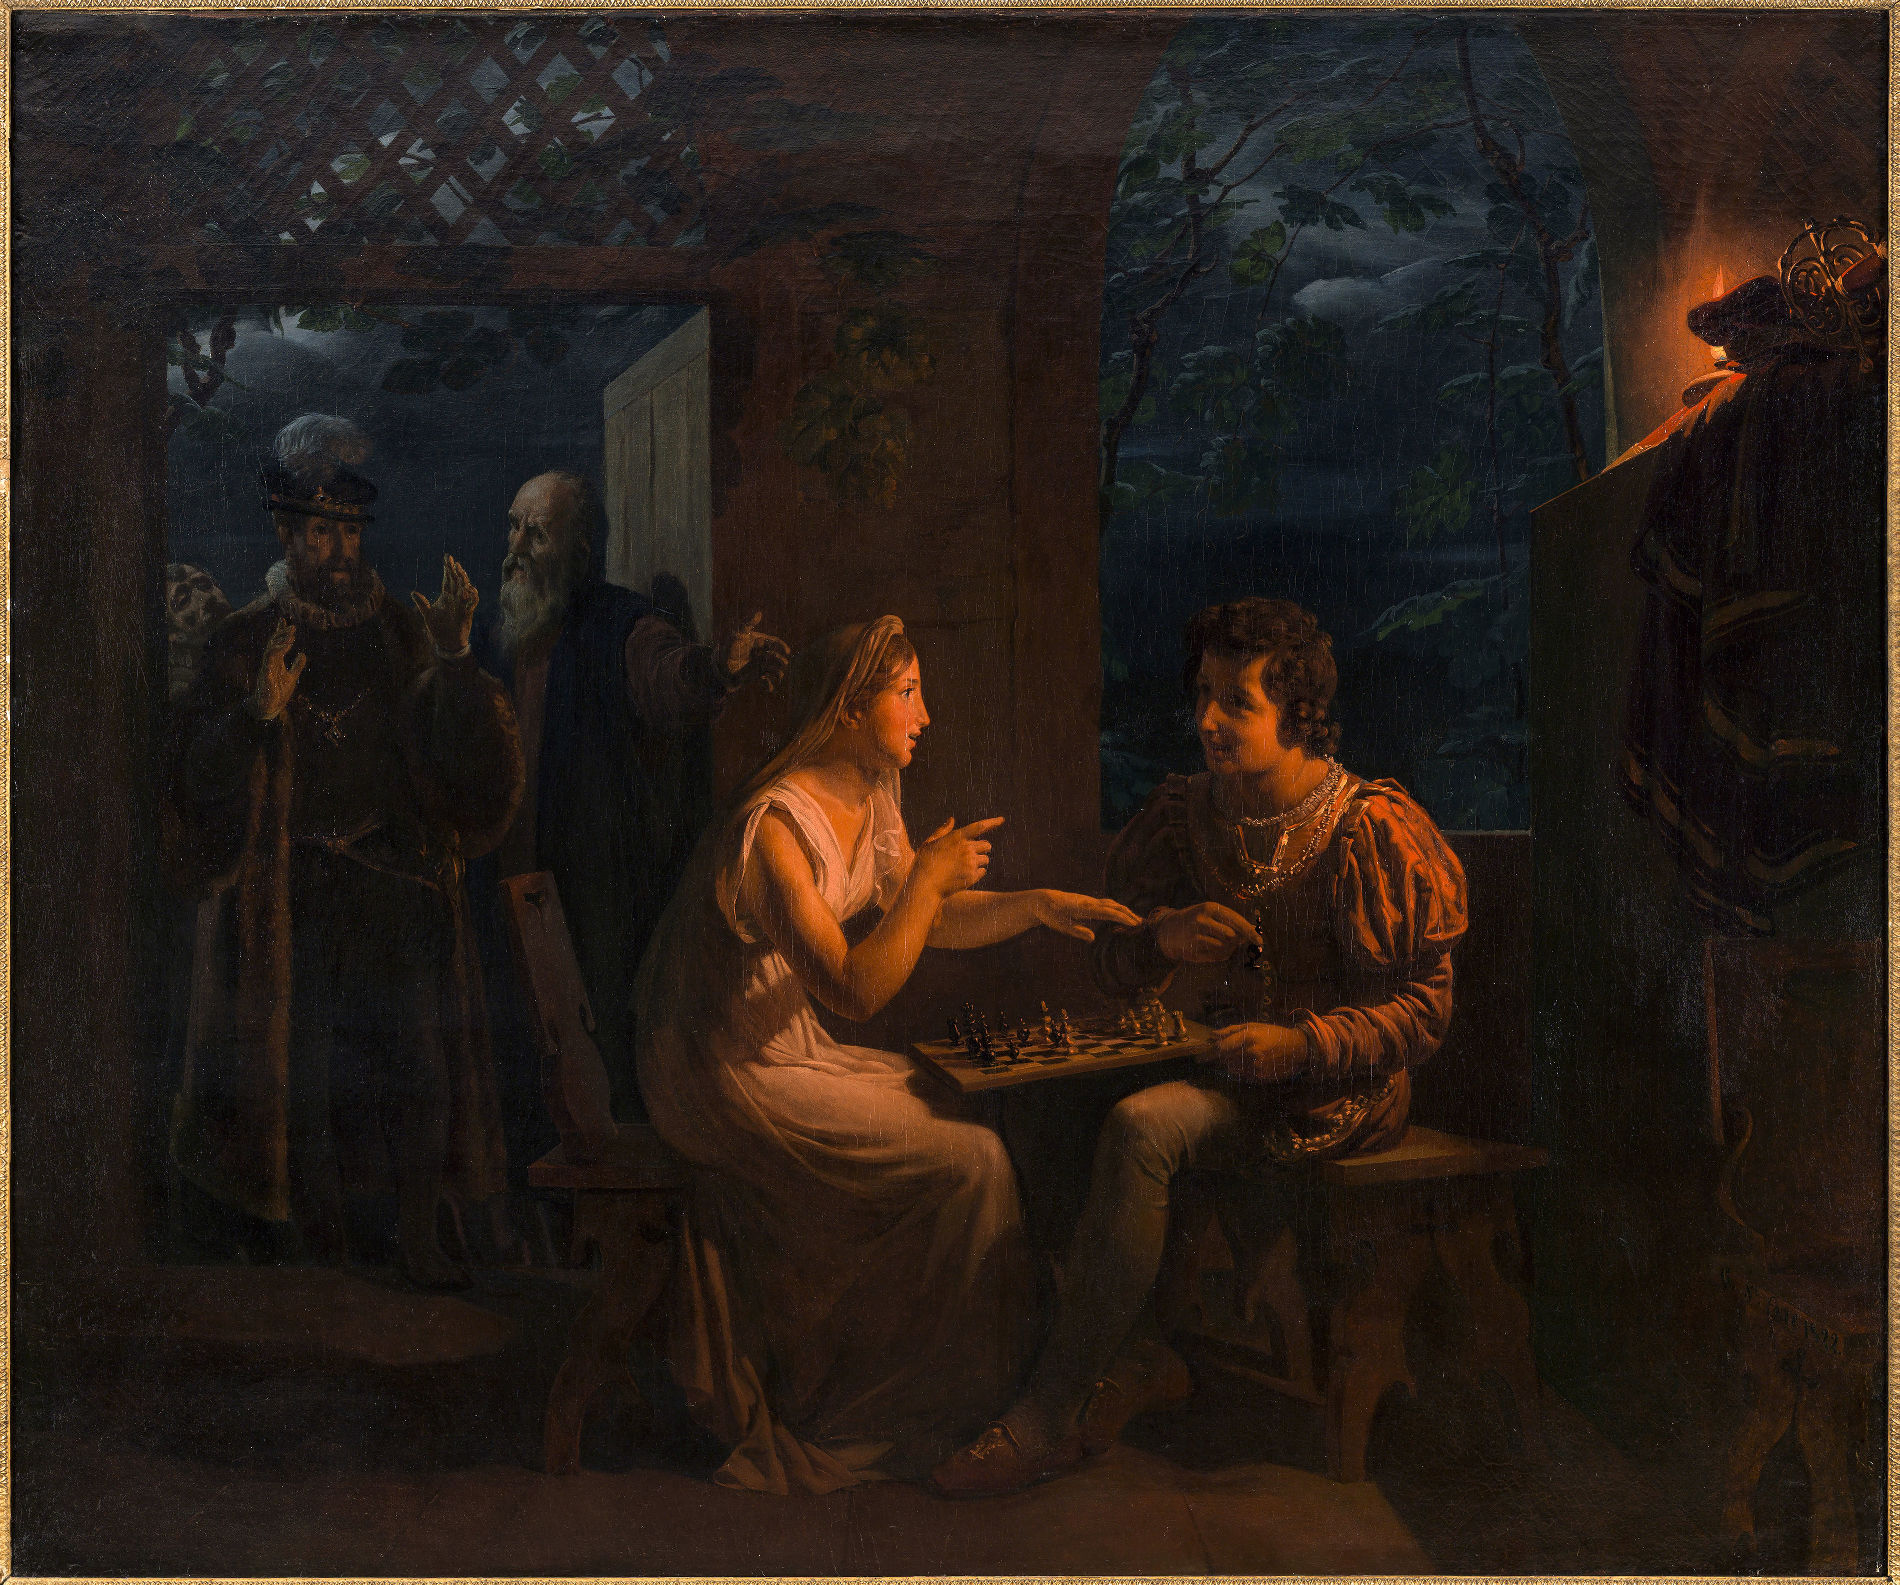 Картина «Миранда играет в шахматы с Фердинандом, шутливо обвиняя его в обмане» (Жилло Сент-Эвр, 1822) © Публичное достояние